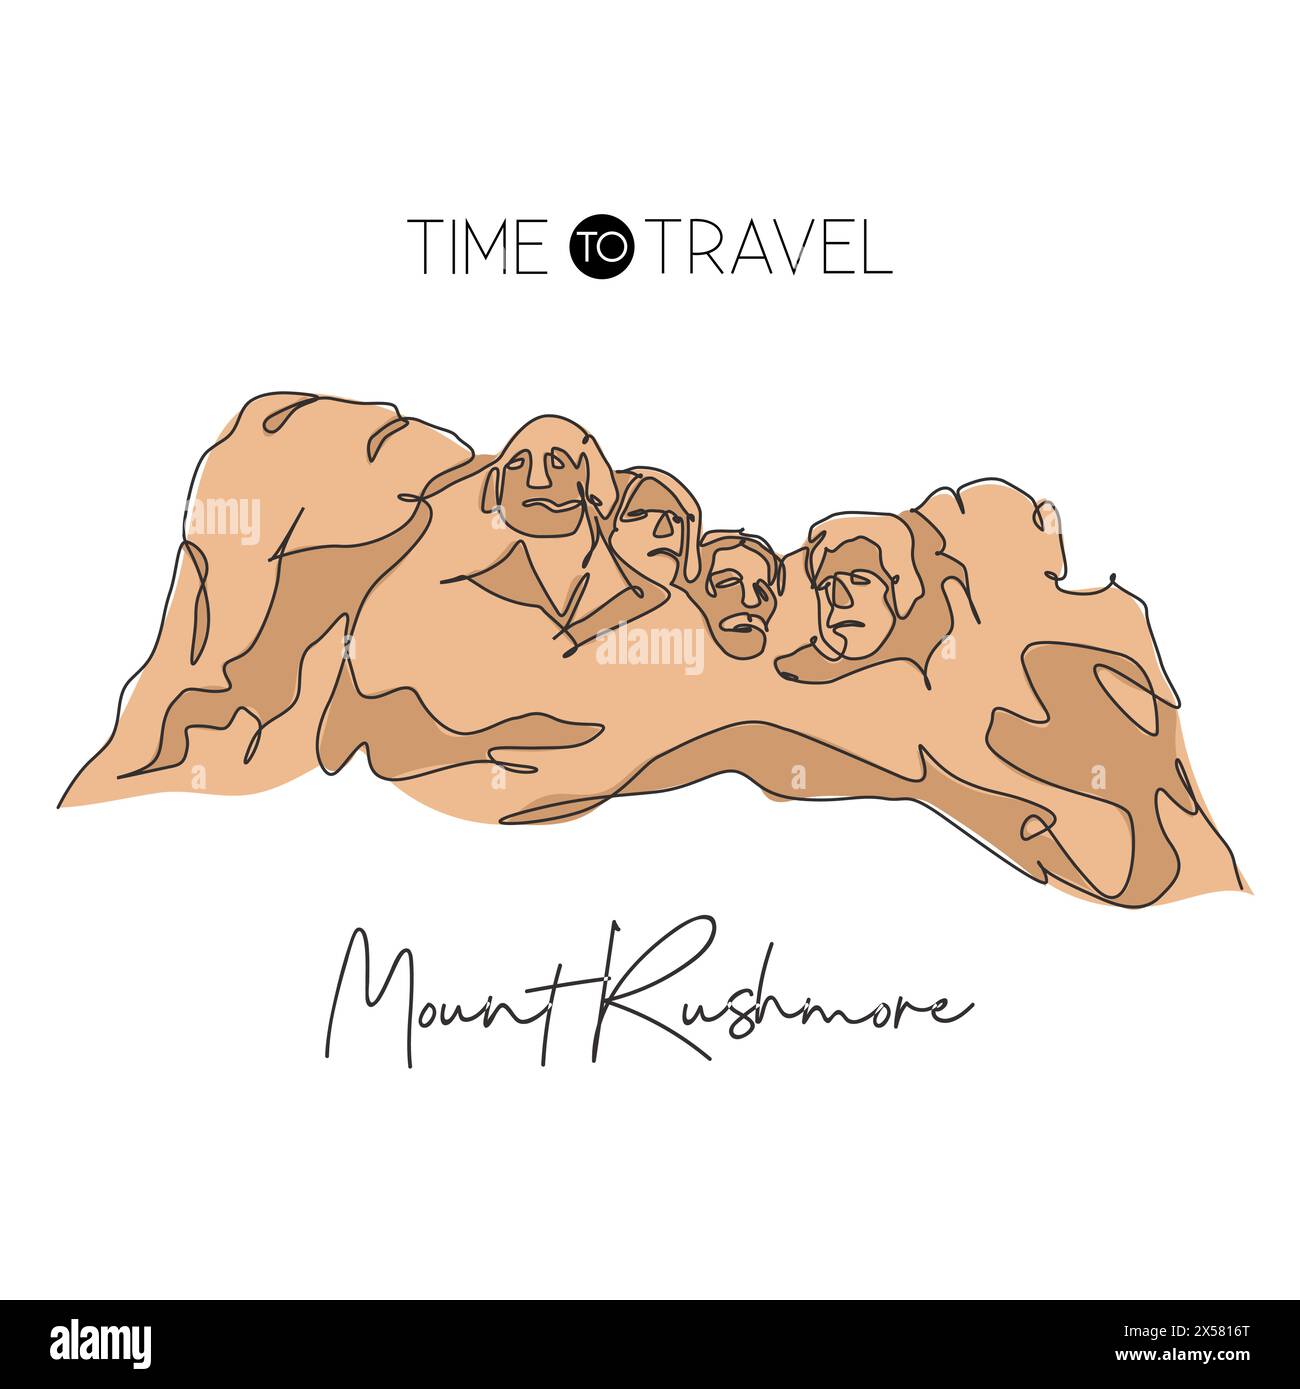 Eine einzelne Linie zeichnet das Wahrzeichen des Mount Rushmore National Memorial. Weltberühmter Ort in den USA. Tourismus Reise Postkarte Wohnwand Dekor Konzept. Modern Stock Vektor